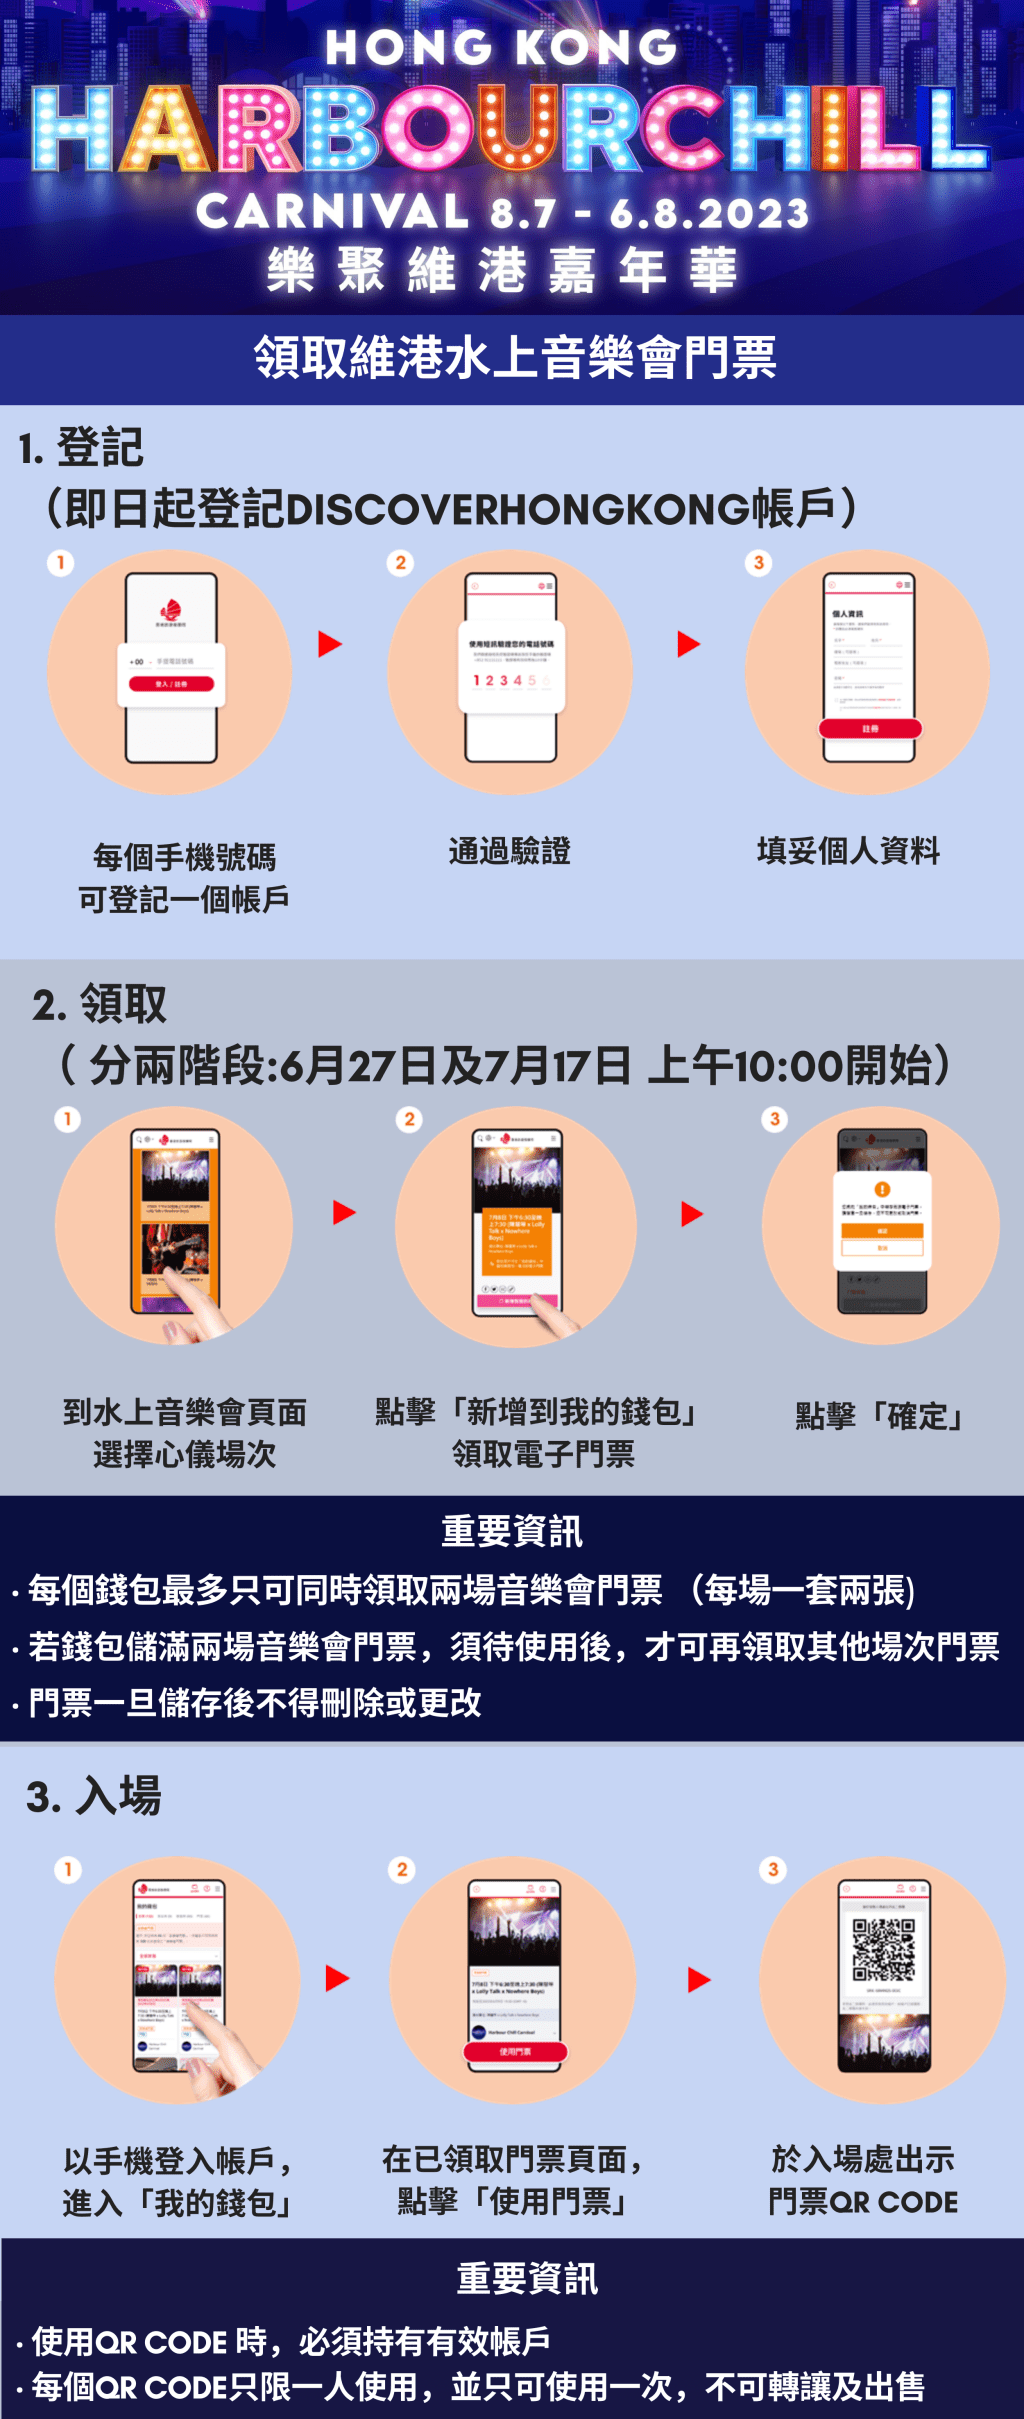 市民须于即日起在 Discover Hong Kong 网站以手机号码登记帐户，每个号码只可登记一个帐户，门票数量有限，领完即止。旅发局